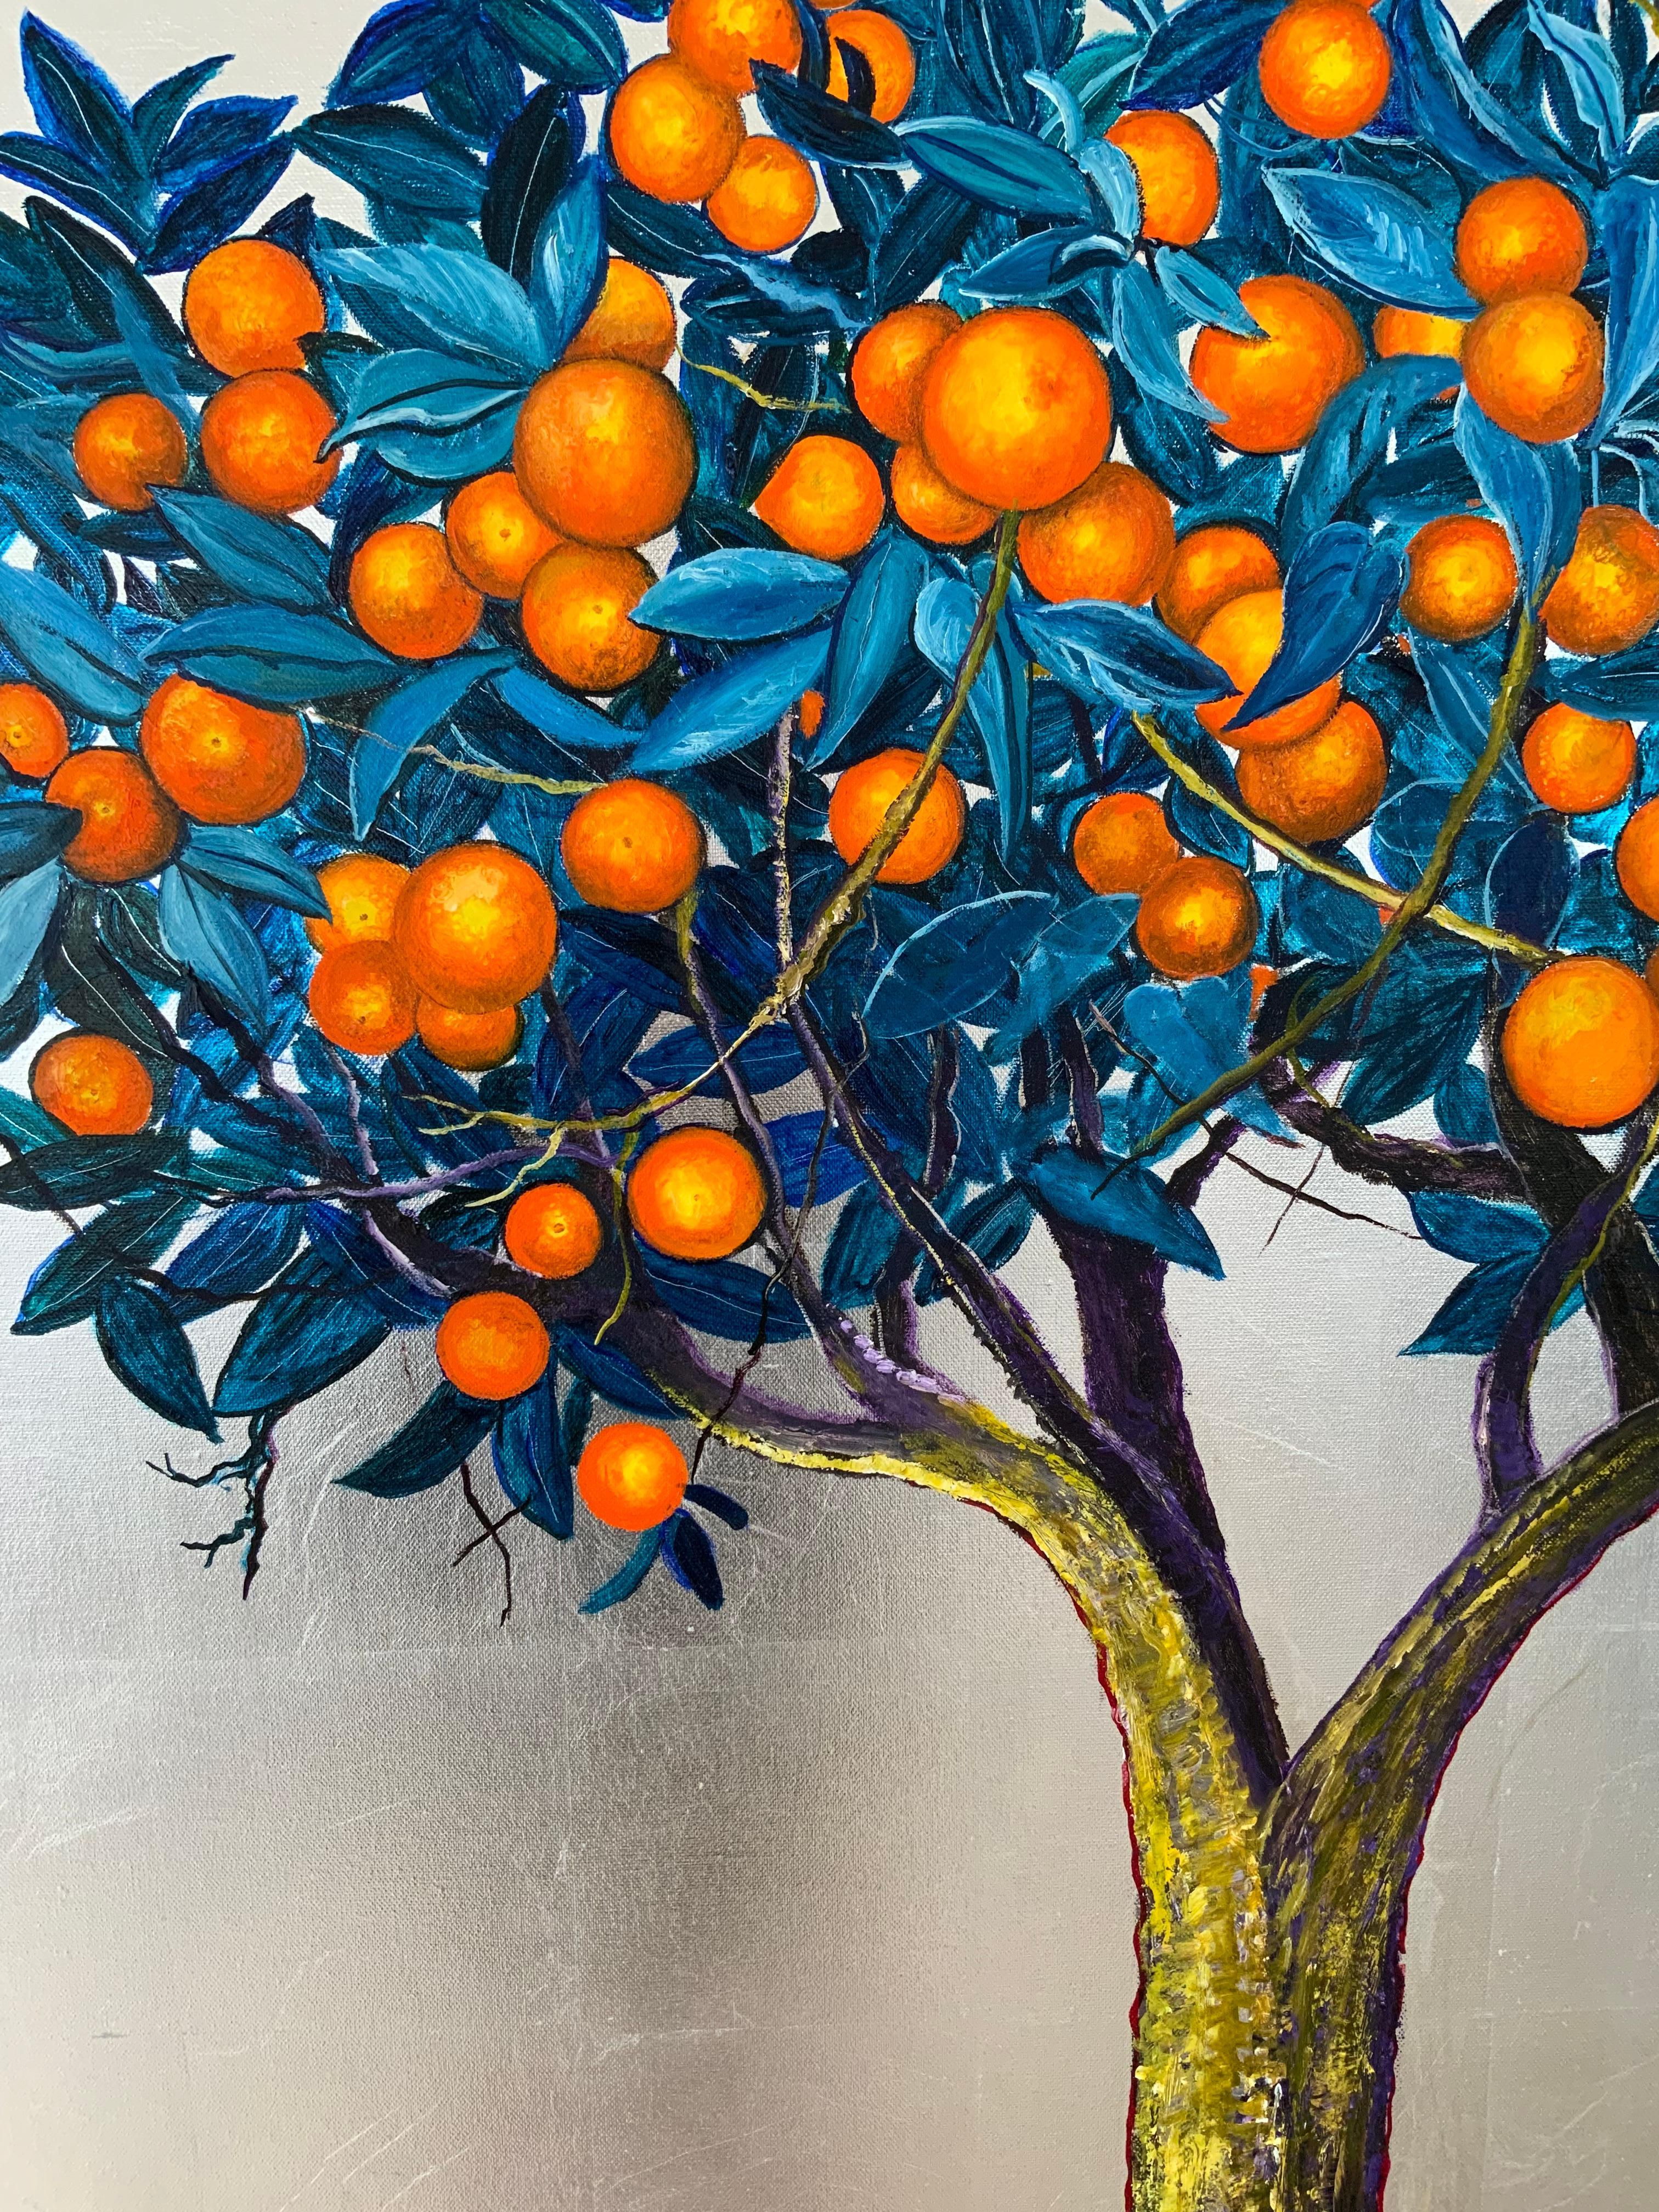 Schillernde Öl- und Silber-Orangenbaummalerei, Landschaft, Blätter, Natur – Painting von Anastasia Gklava